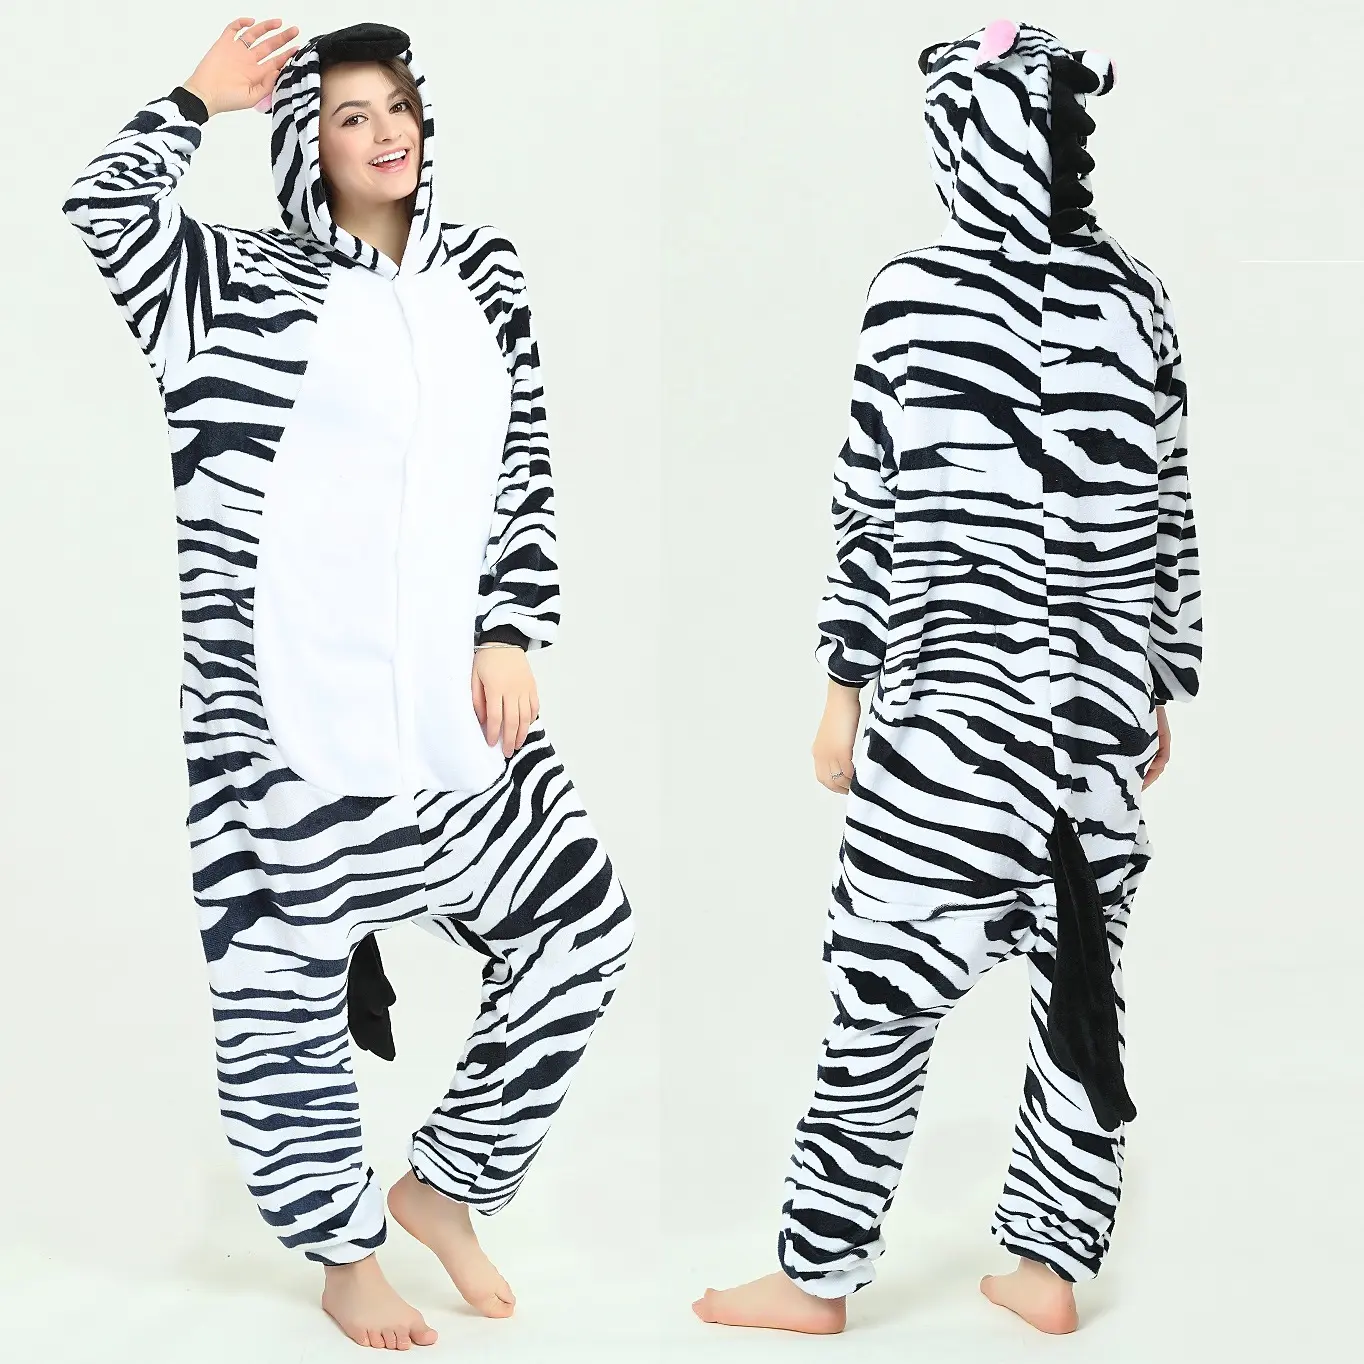 Produttori di pigiami per adulti Zebra per adulti